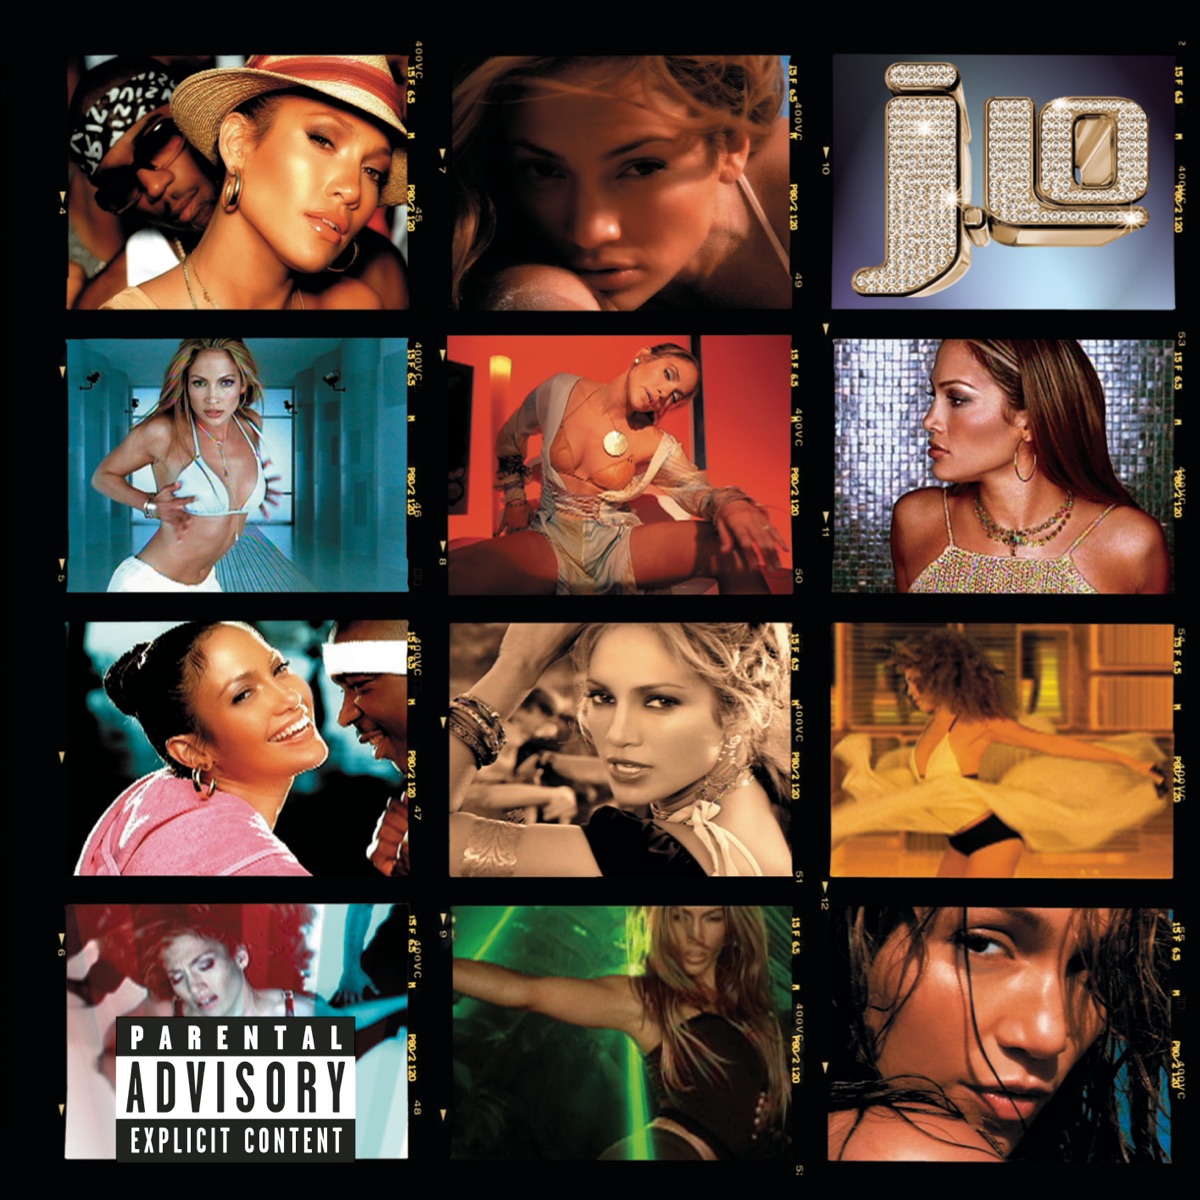 J to tha L-O! The Remixes - Album by Jennifer Lopez - Apple Music